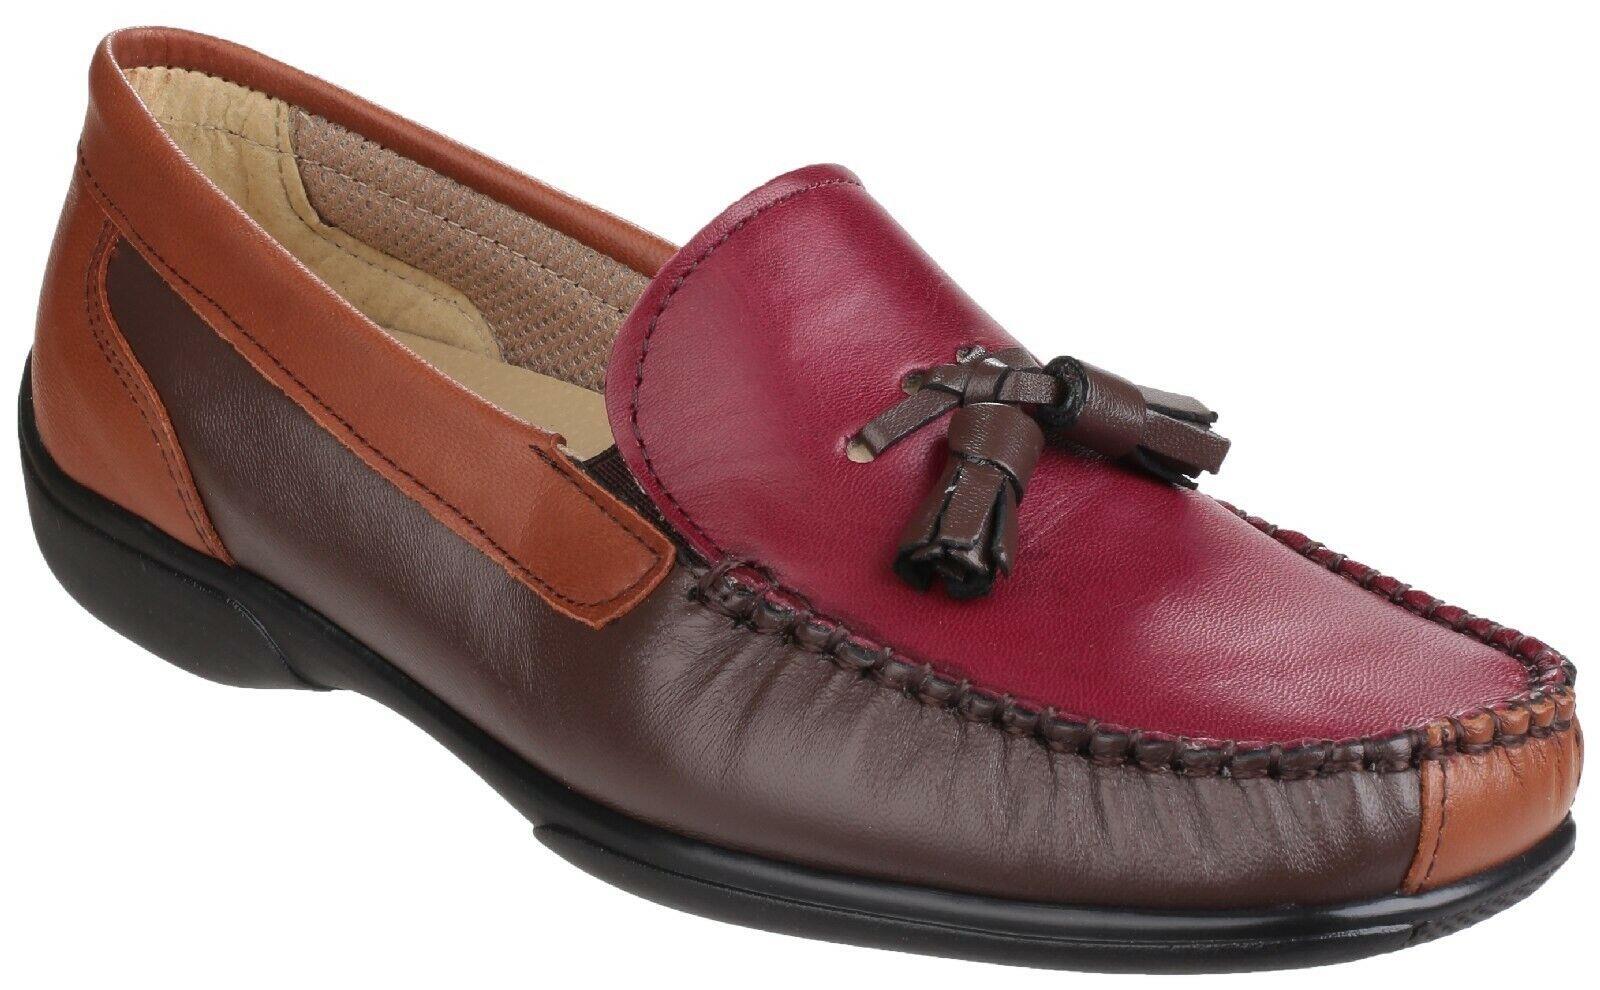 Cotswold Biddlestone chestnut/tan/wine women's slip on lightweight loafer shoe